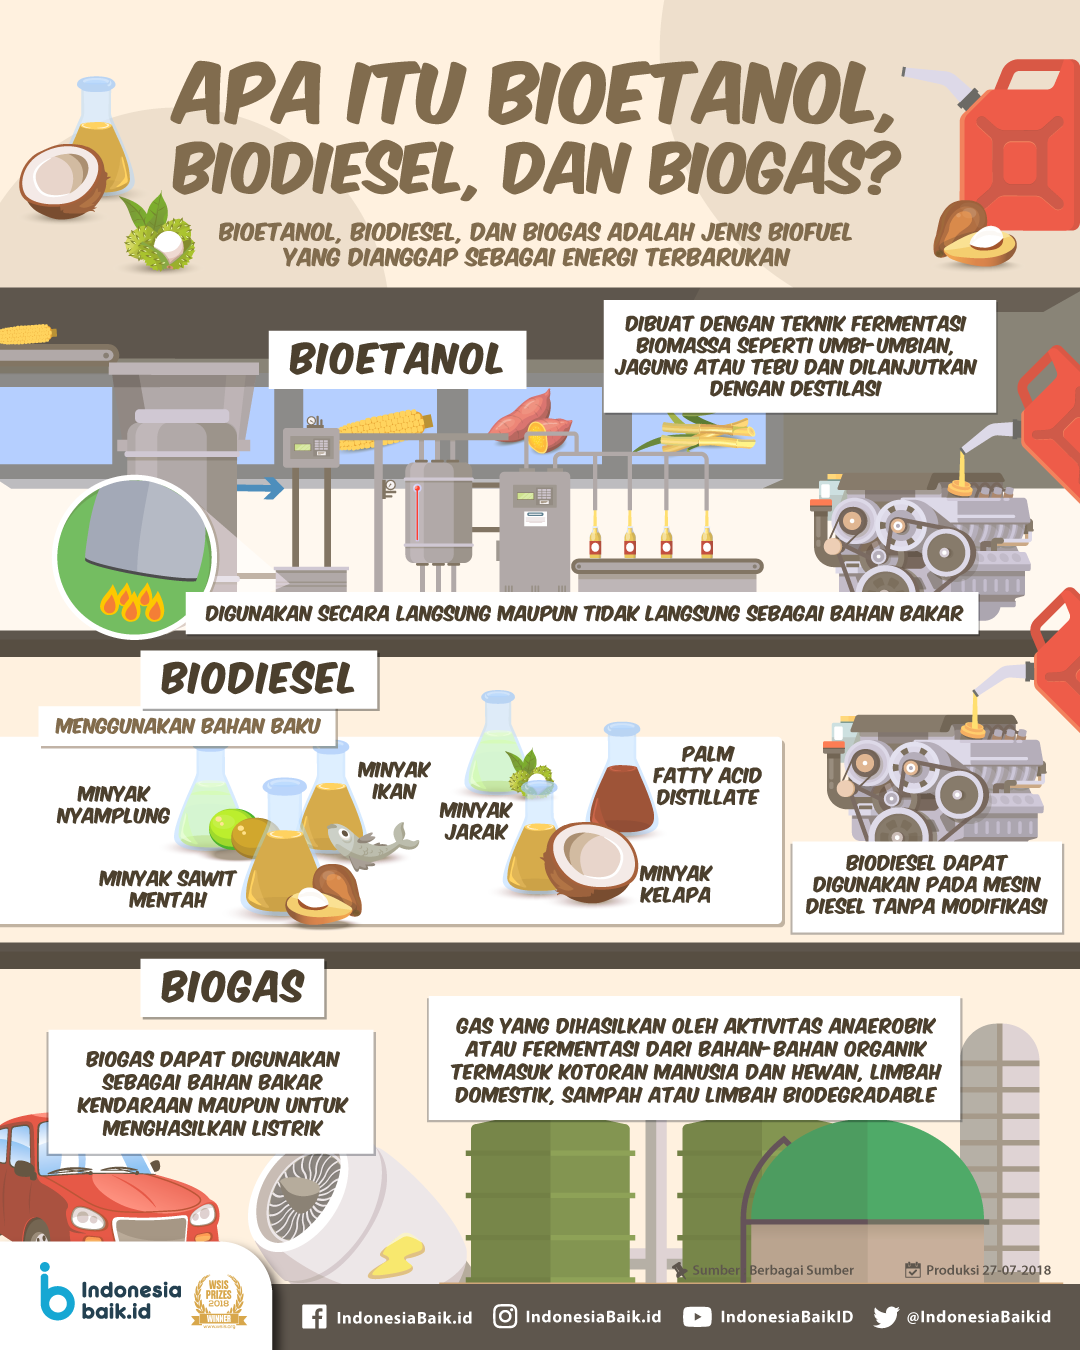 Bioetanol berasal dari